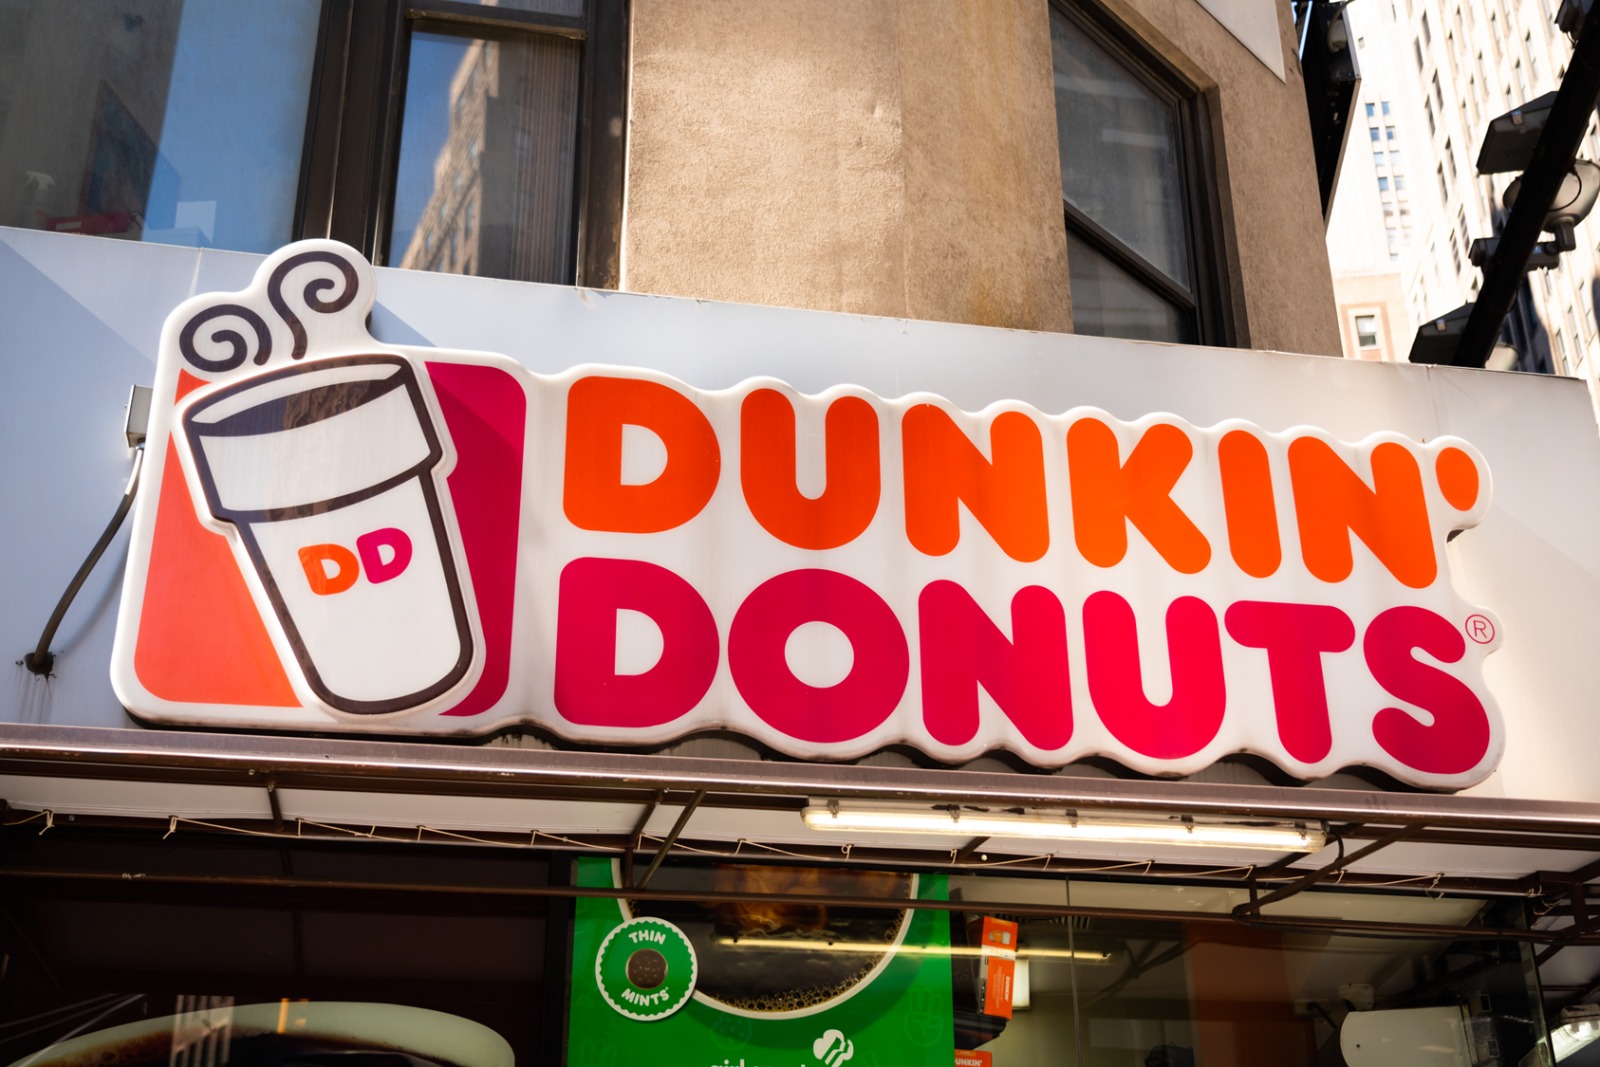 Dunkin' Donuts perdió batalla legal y ahora deberá indemnizar a mujer con 3 millones de dólares